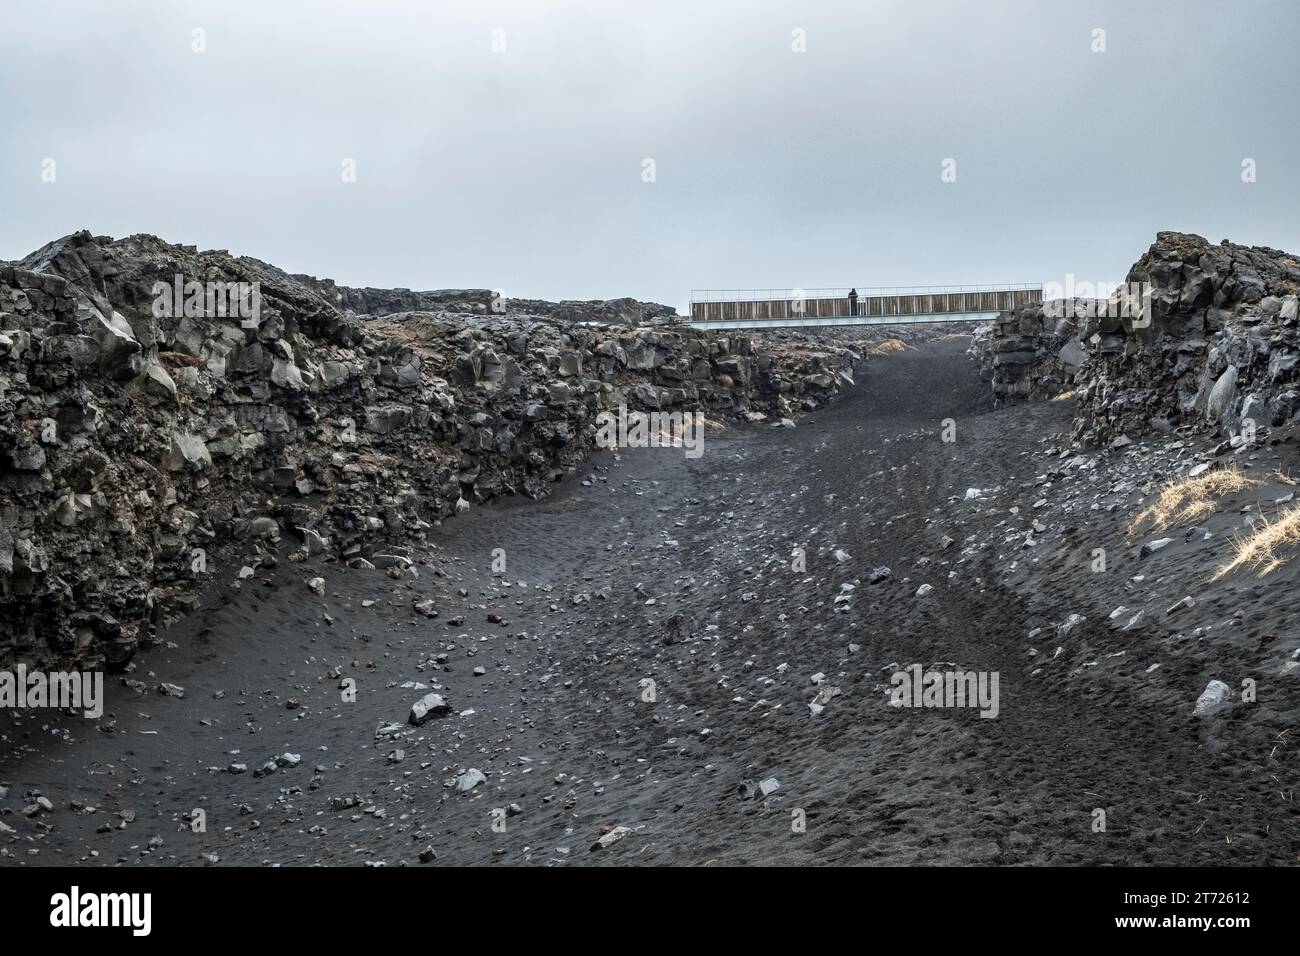 Le pont entre les continents à Sandvik, Islande. Il traverse le fossé qui s'élargit lentement entre les plaques tectoniques d'Europe et d'Amérique du Nord Banque D'Images